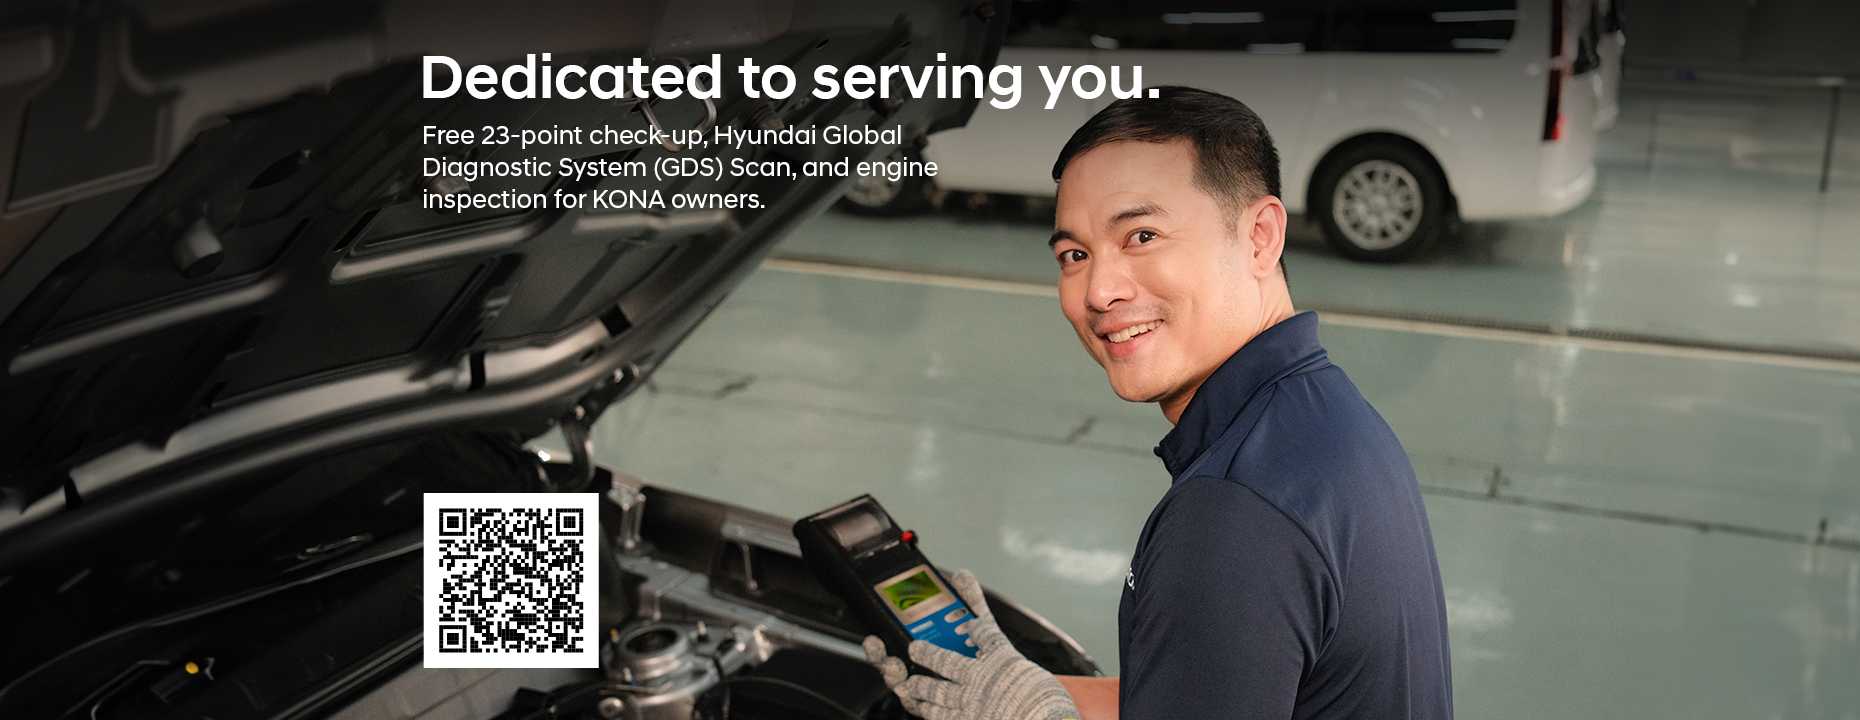 Image of a man servicing a Hyundai vehicle